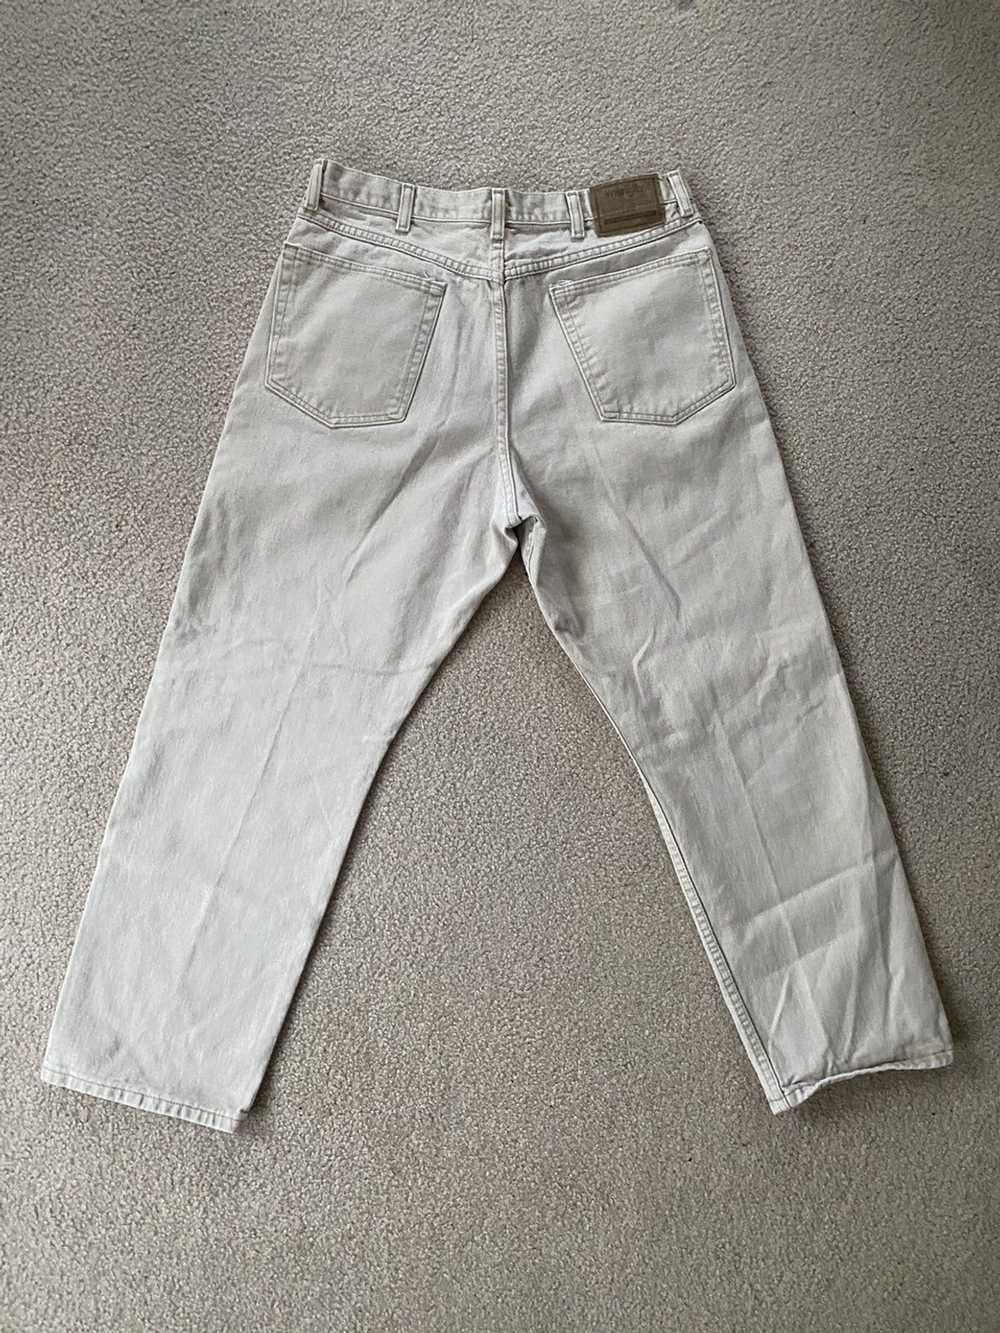 Vintage × Wrangler Vintage wrangler jeans - image 2